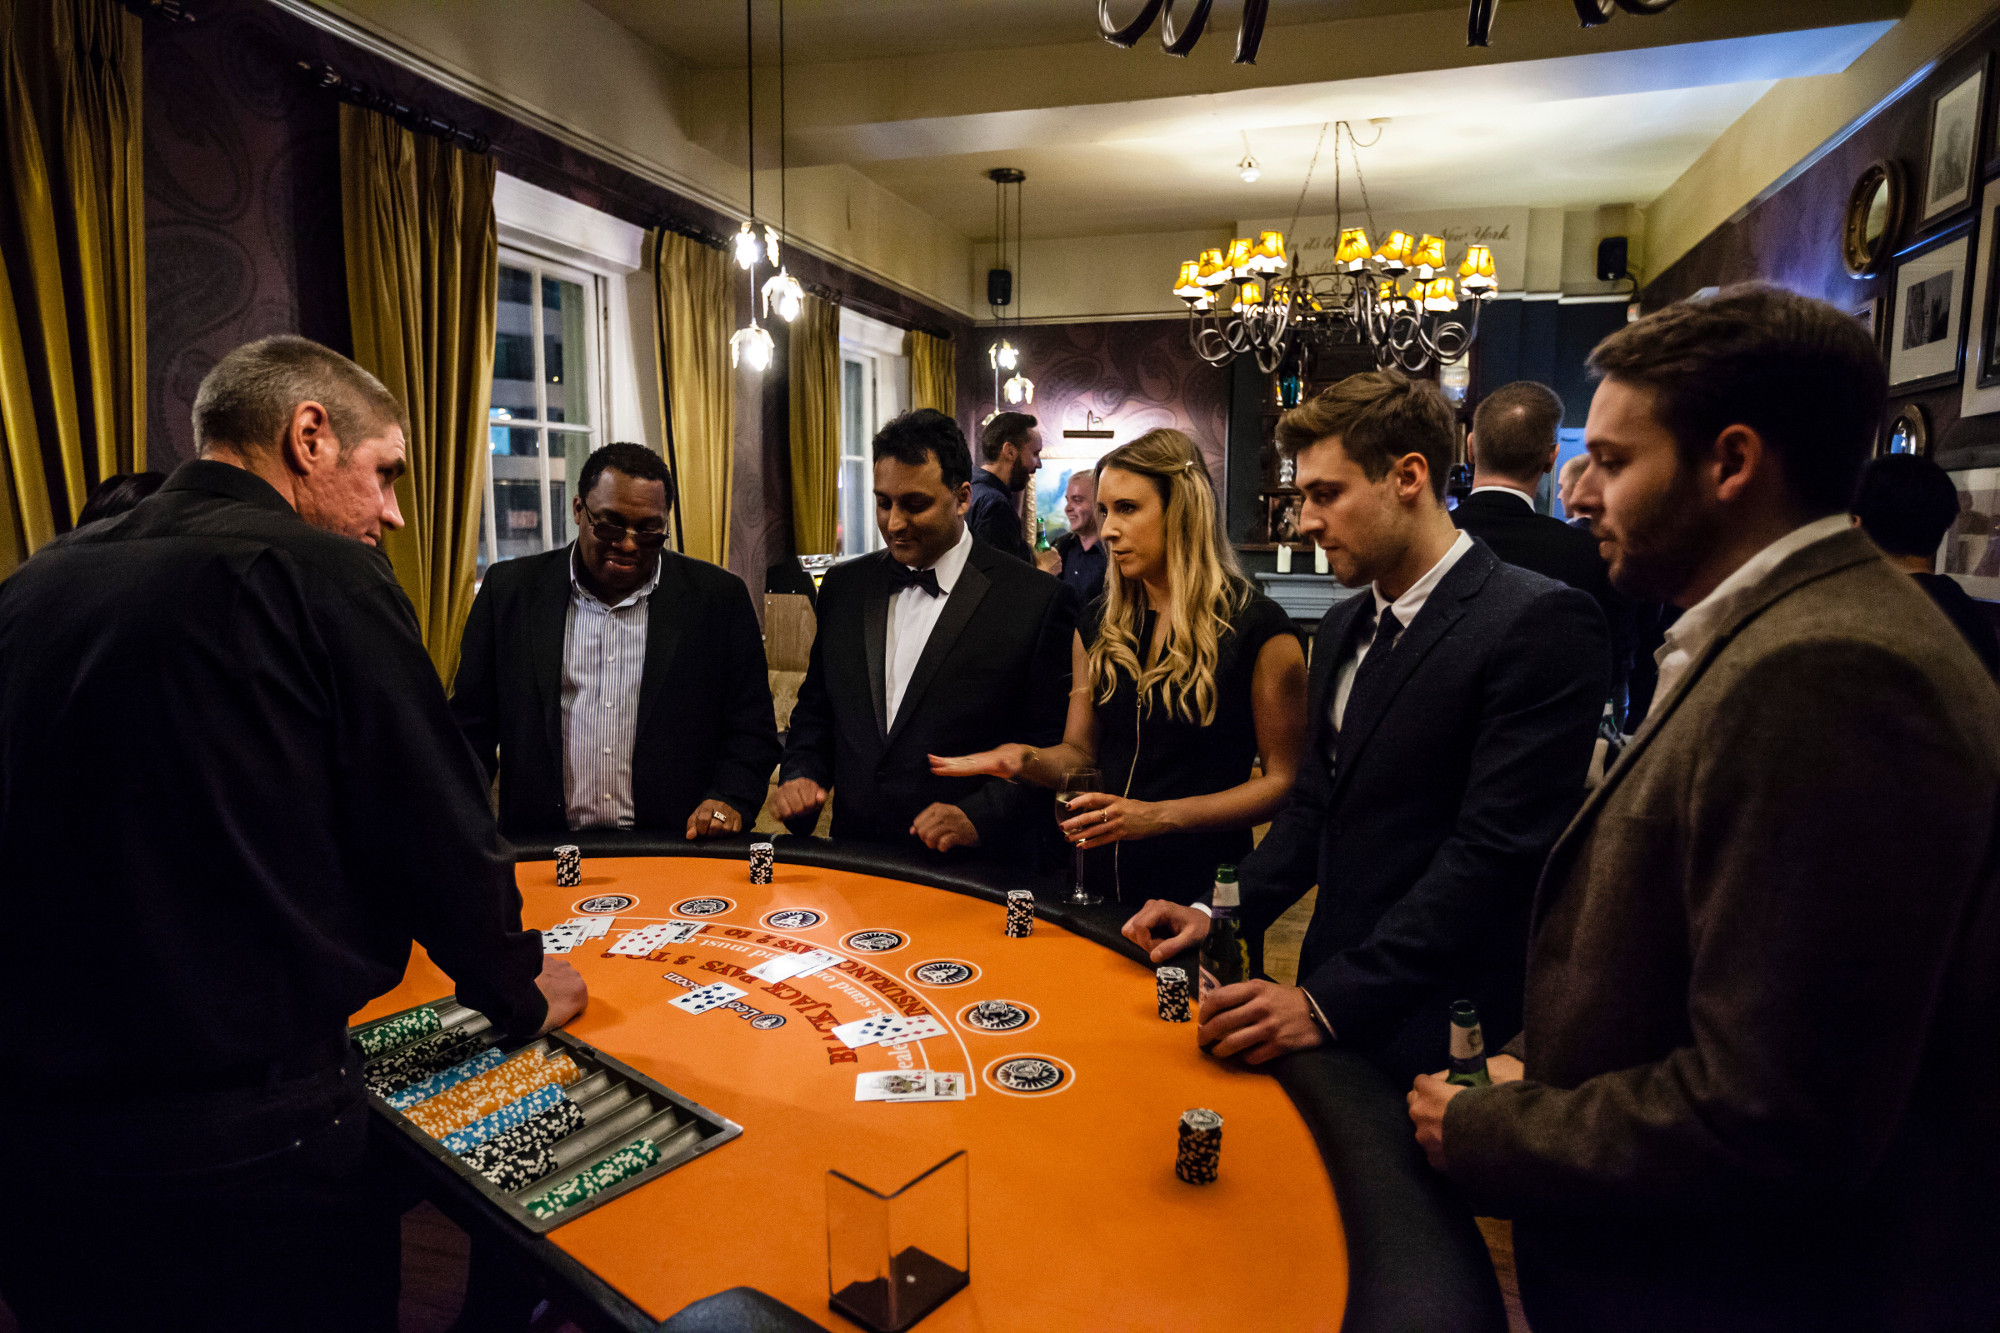 The LeoVegas Bond blackjack tournament